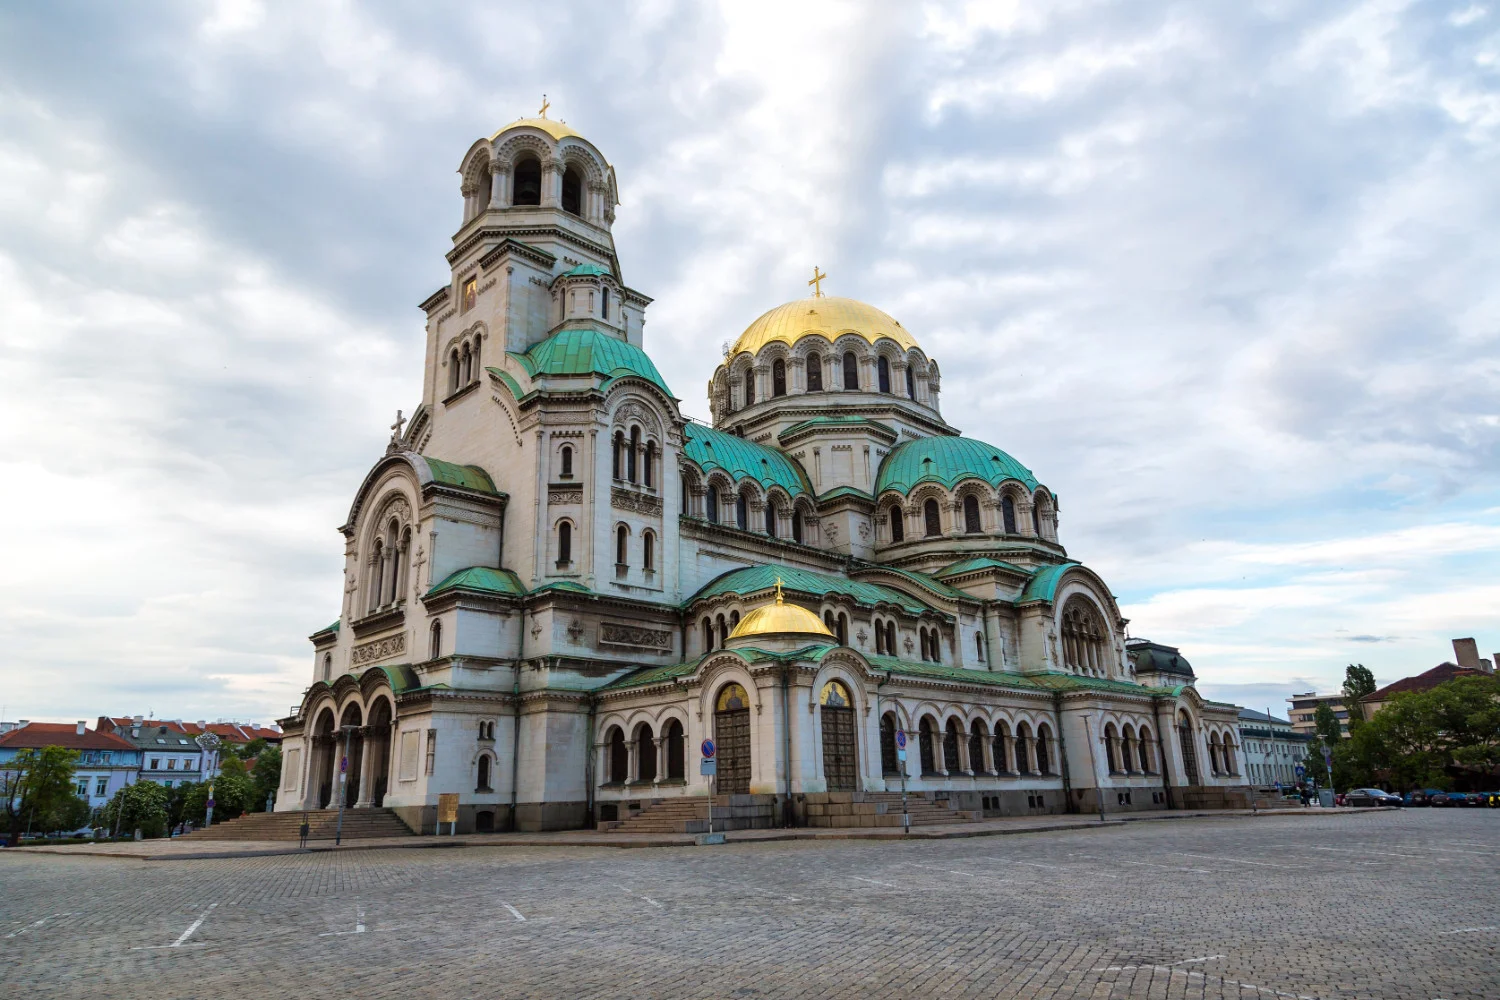 Parmi les nombreux monuments, la cathédrale orthodoxe bulgare Alexandre Nevsky attire l'œil.